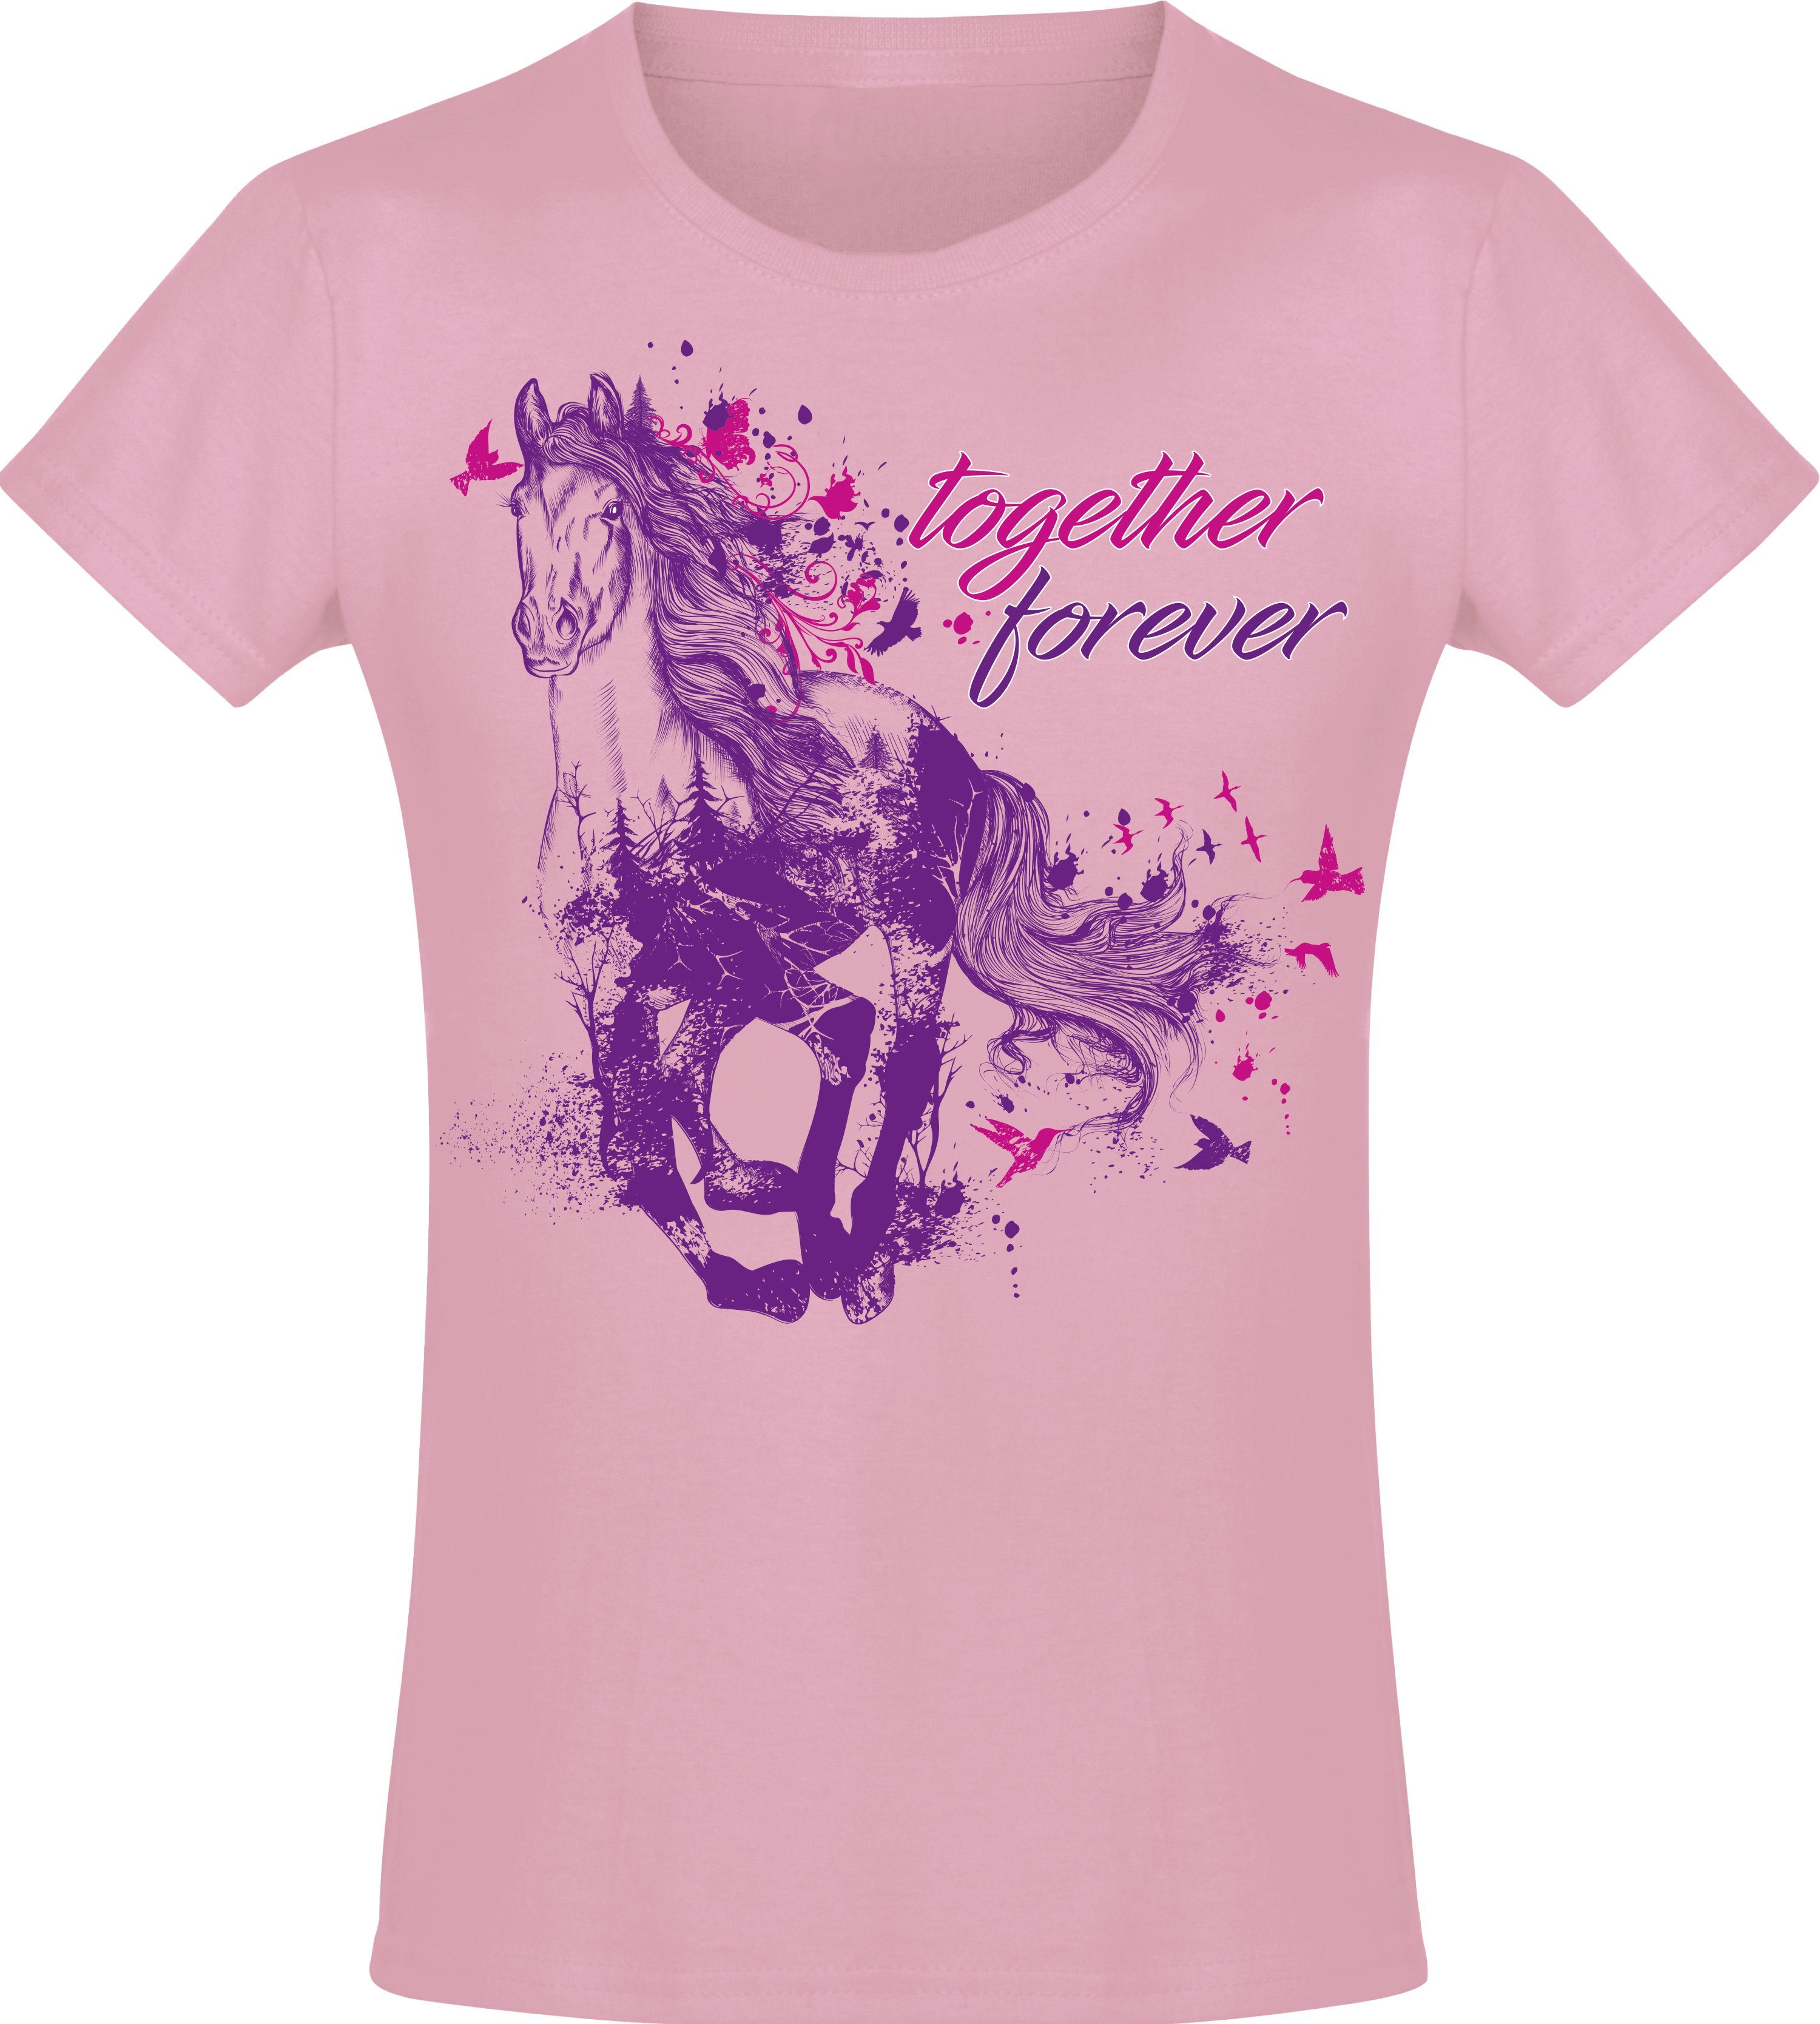 T-Shirt hochwertiger Reiten, - Print-Shirt Forever Pferde Baumwolle Together Baddery Geburtstag aus Siebdruck, Geschenk - Mädchen